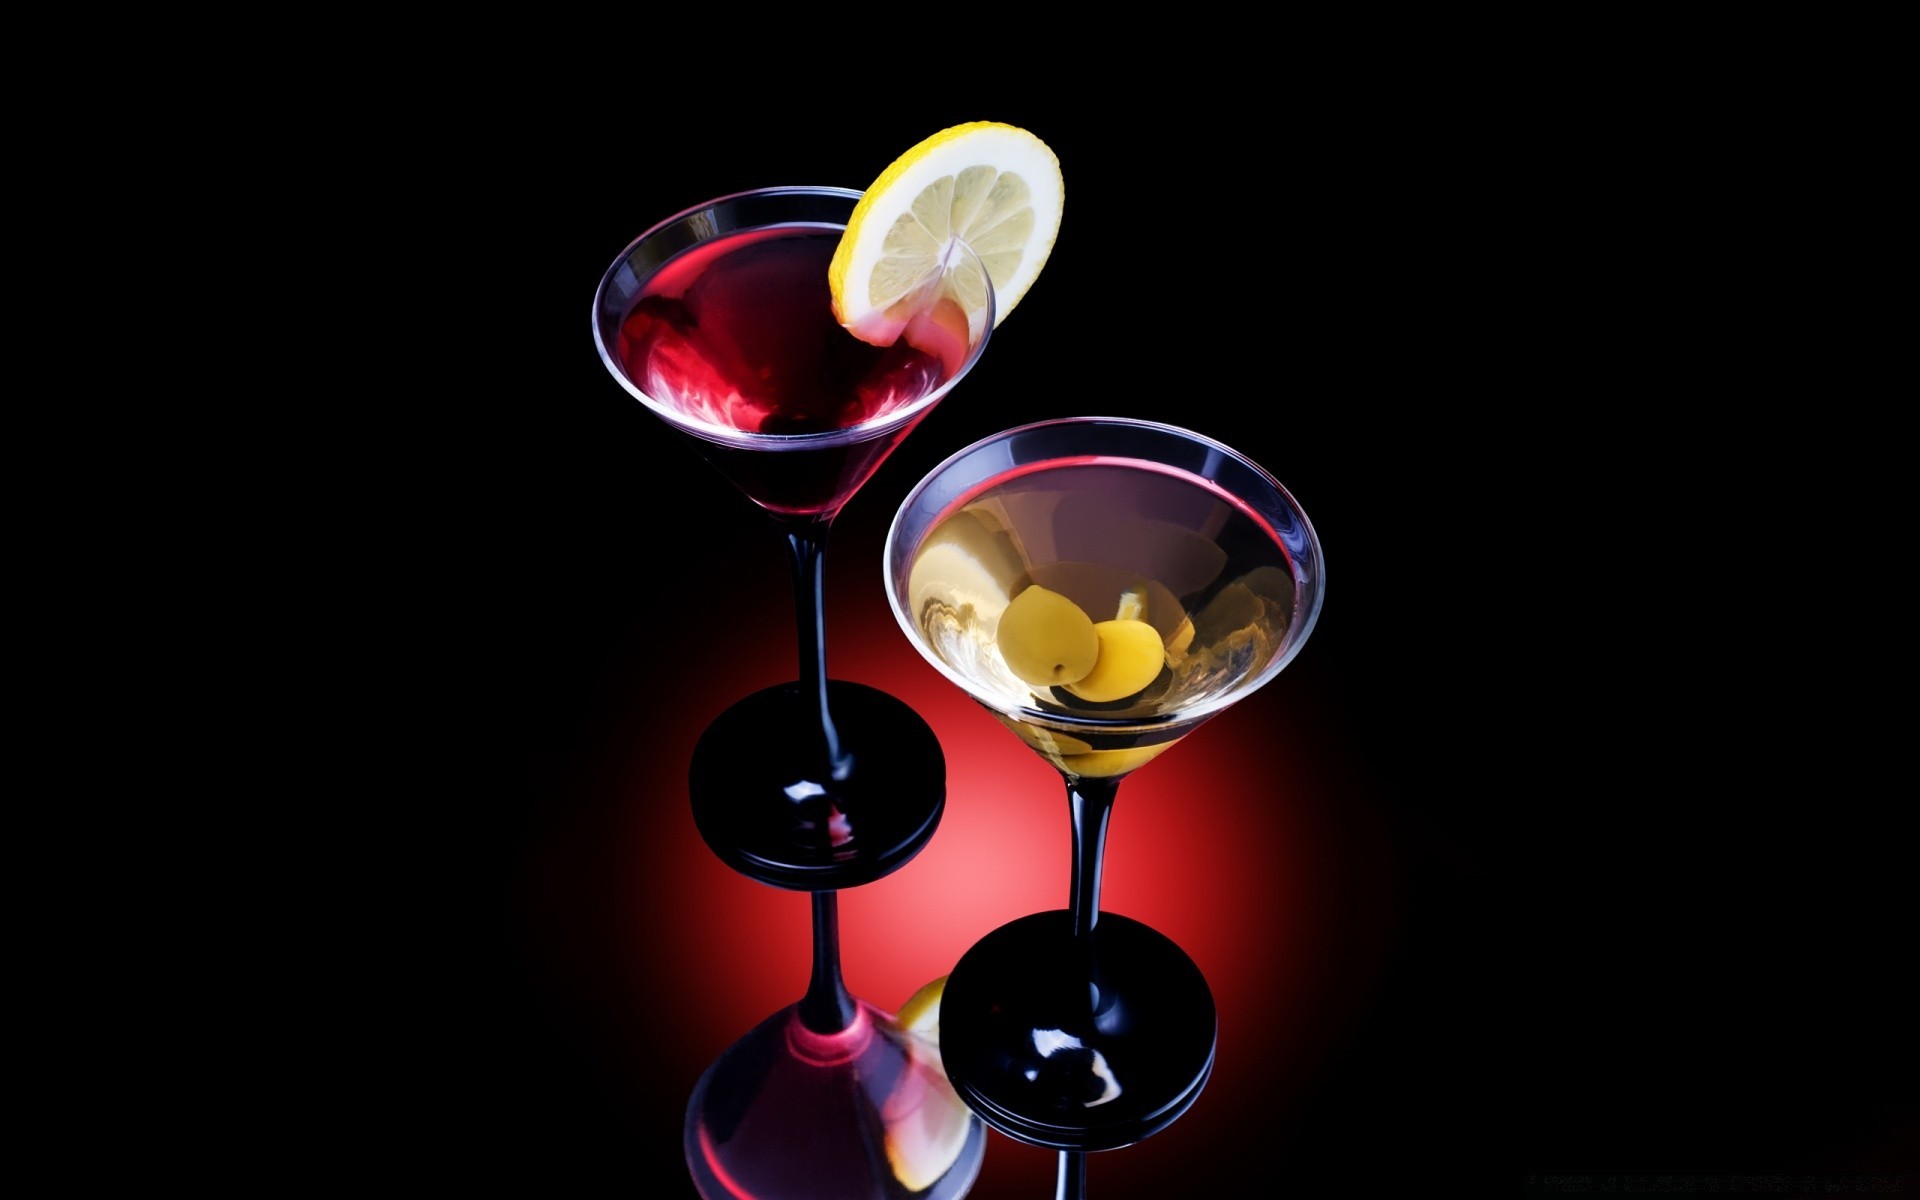 напитки стекло алкоголь коктейль бар водка ликер участник пить мартини вина джин ночная жизнь жидкость праздник лед бокал круто вермут холодная